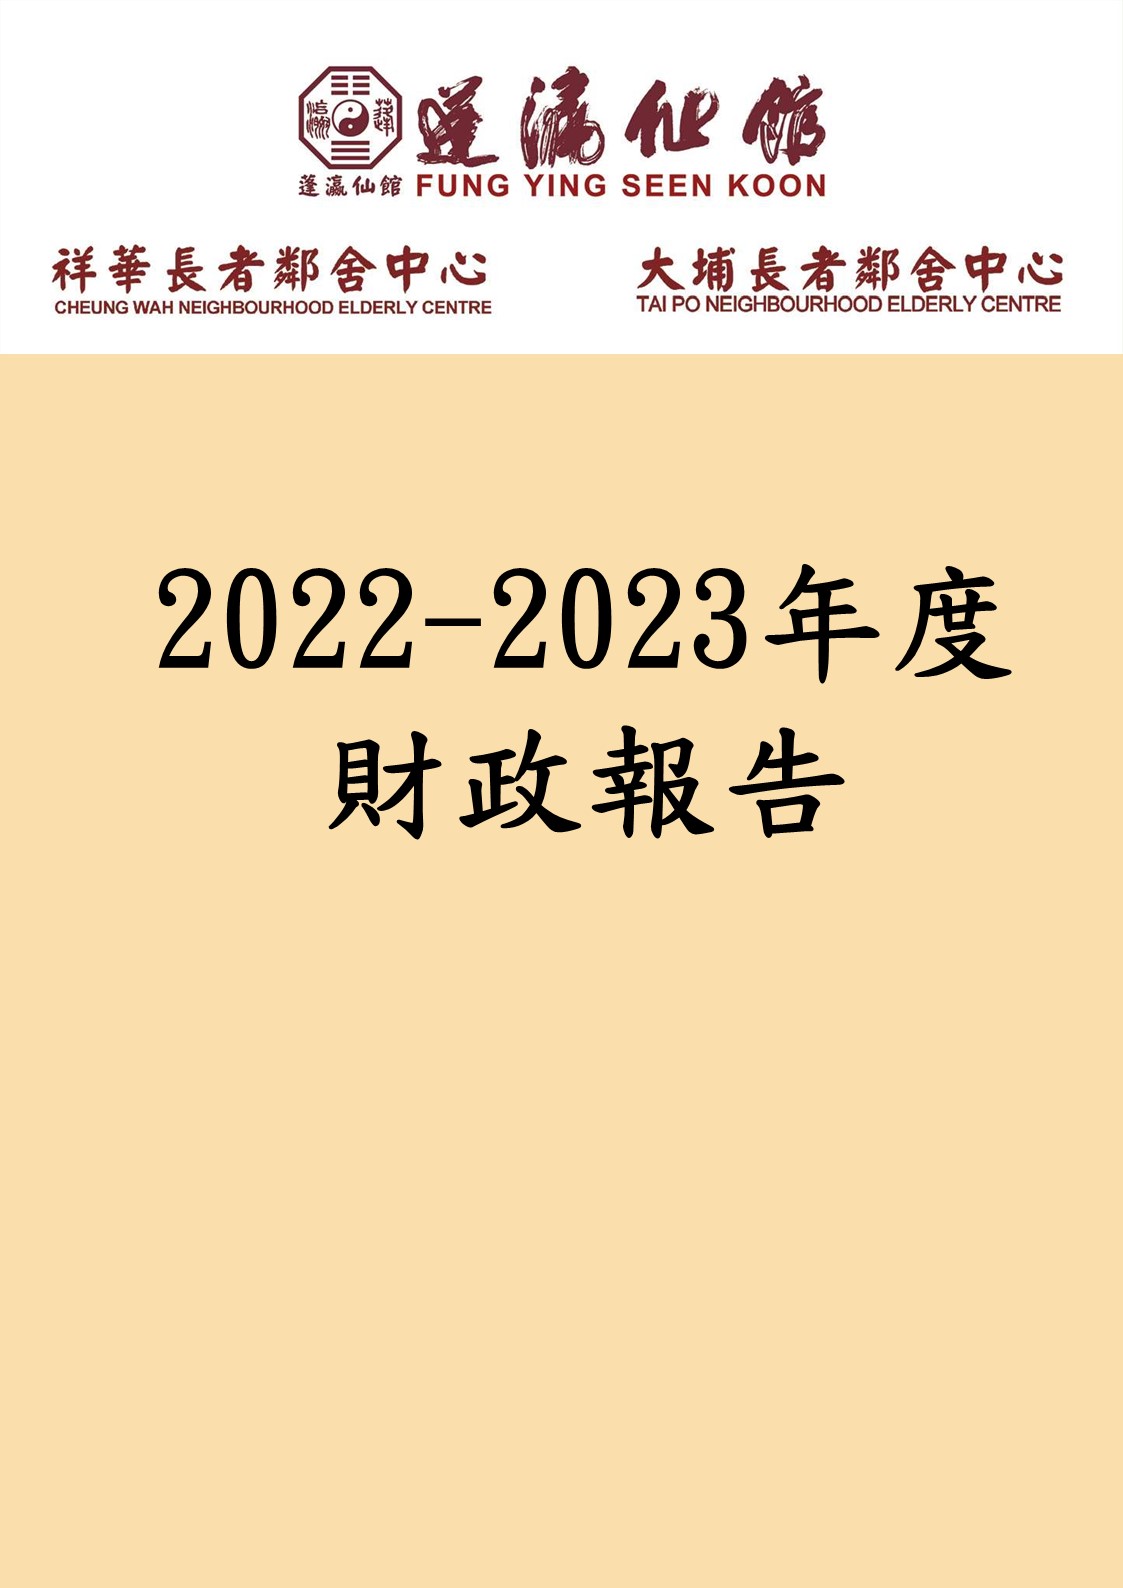 蓬瀛仙館鄰舍中心2022-2023財政報告